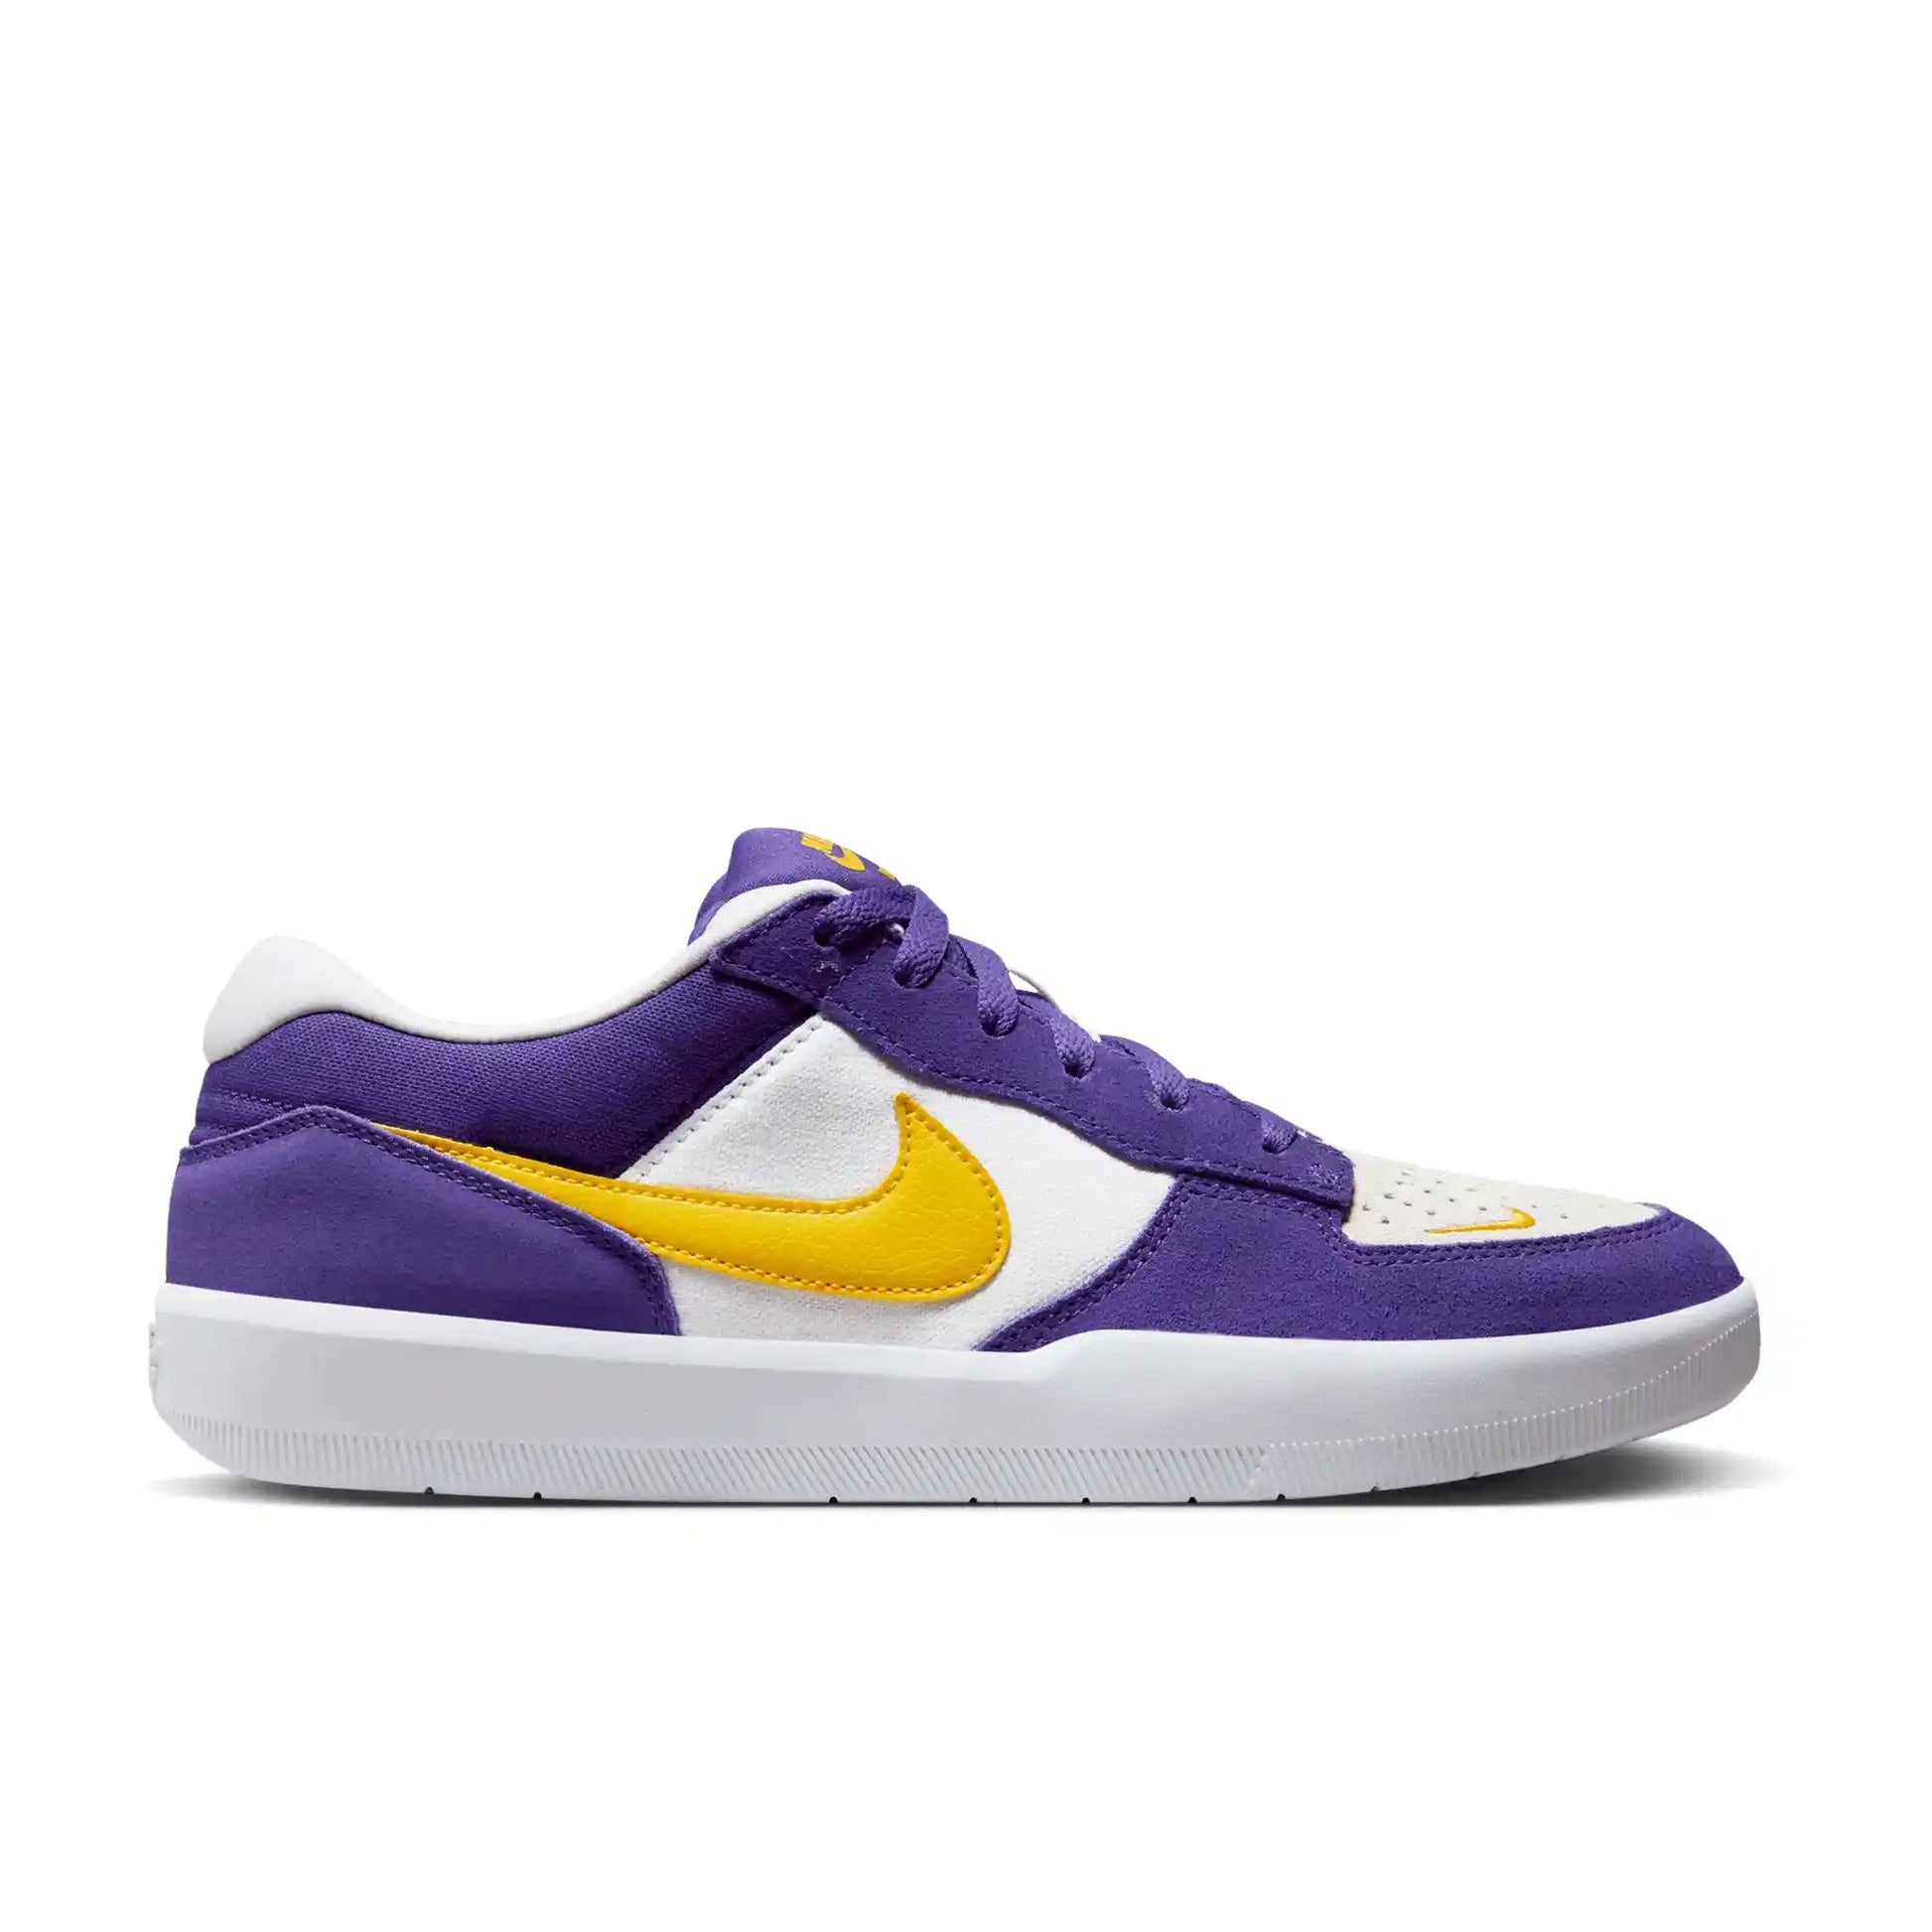 Nike SB Force 58, court purple/amarillo-white-white - Tiki Room Skateboards - 1